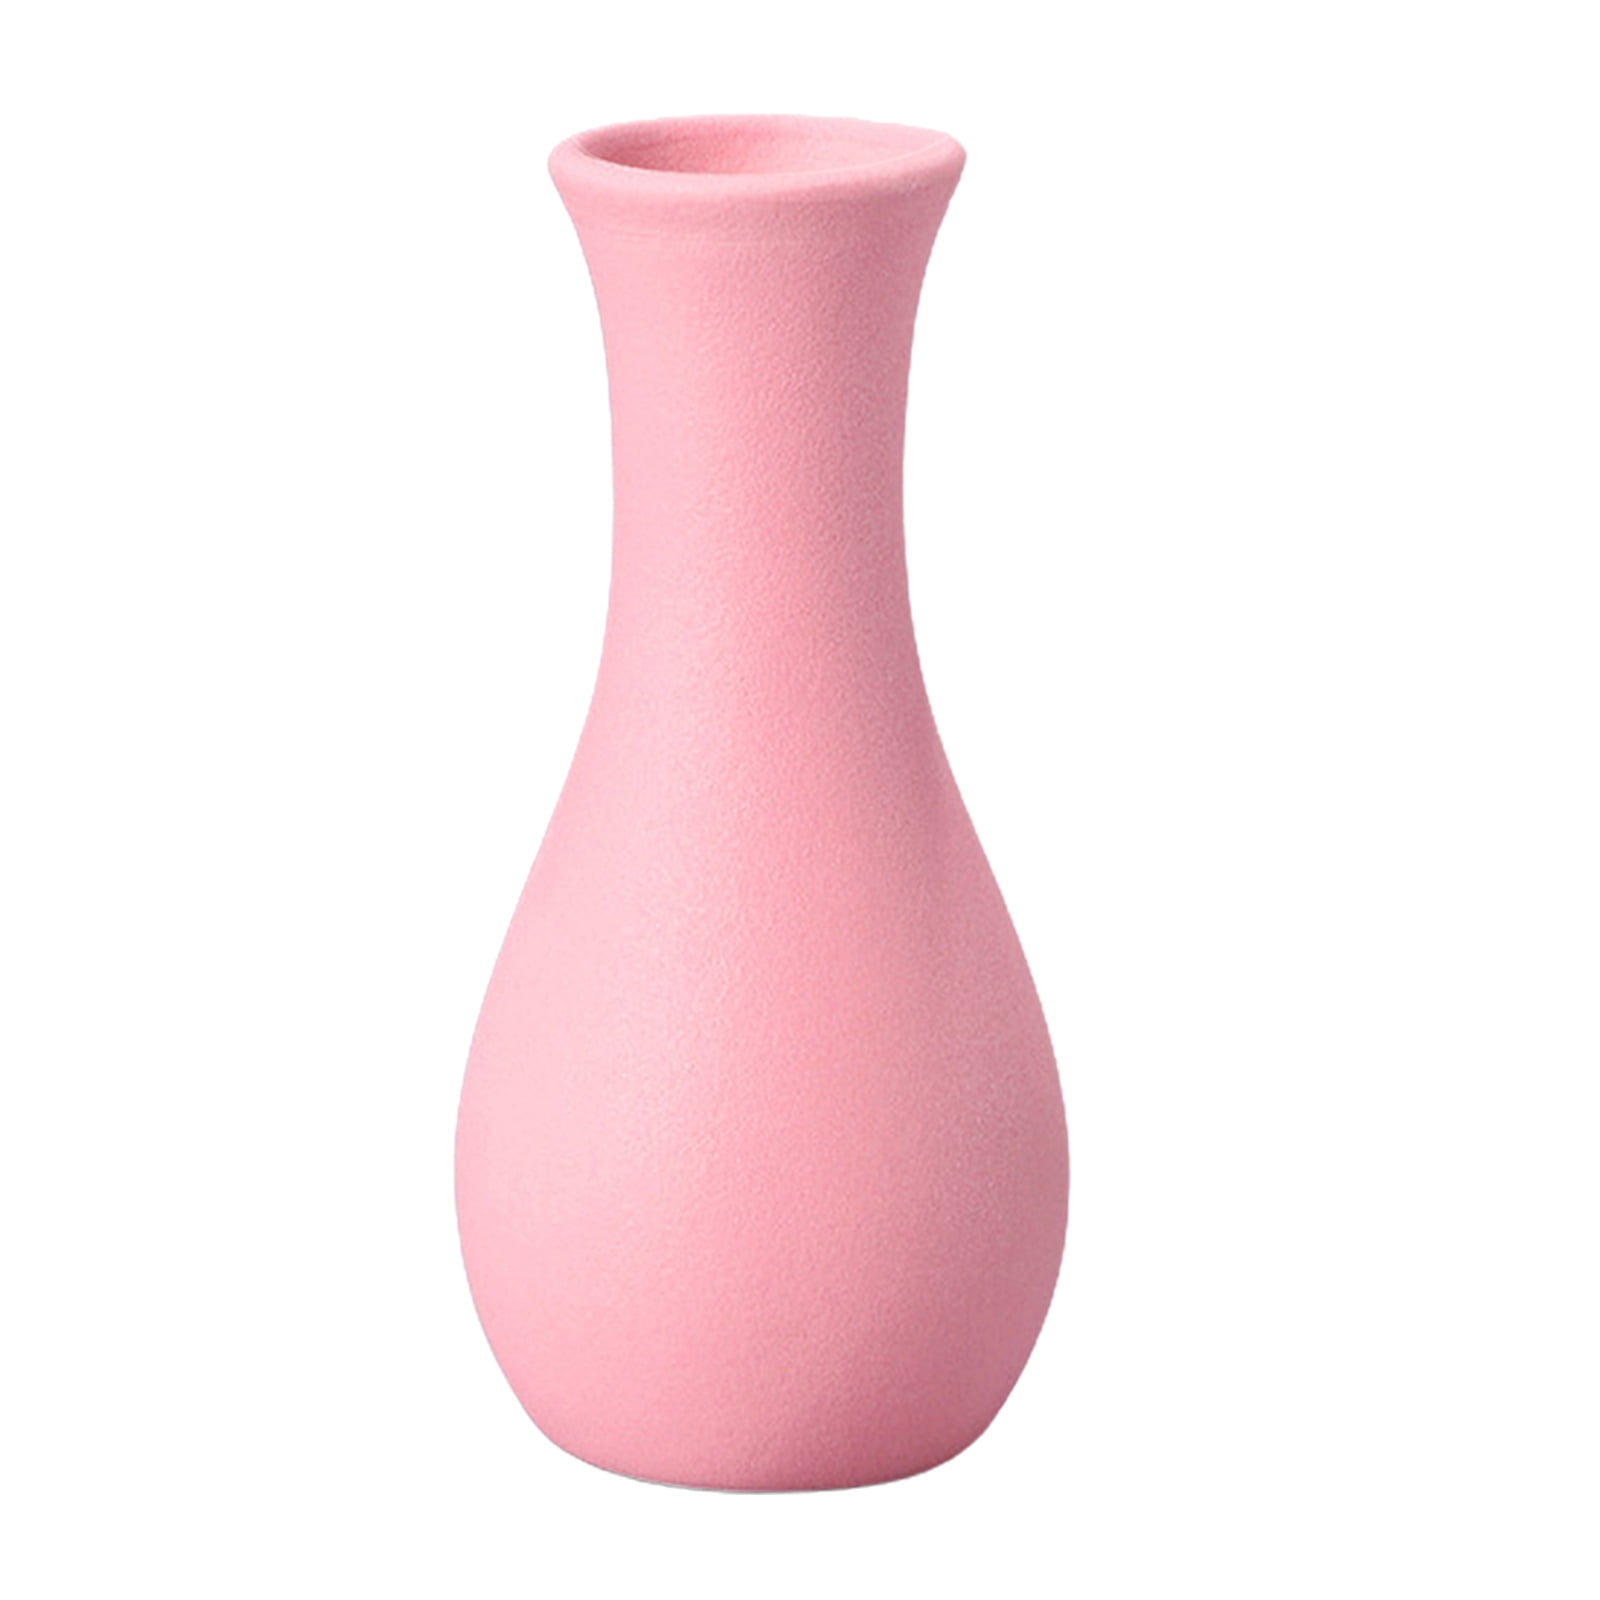 Pink Ceramic Flower Vase Cylinder Glazed Bottle Home Decor Ornament Gift 18cm 